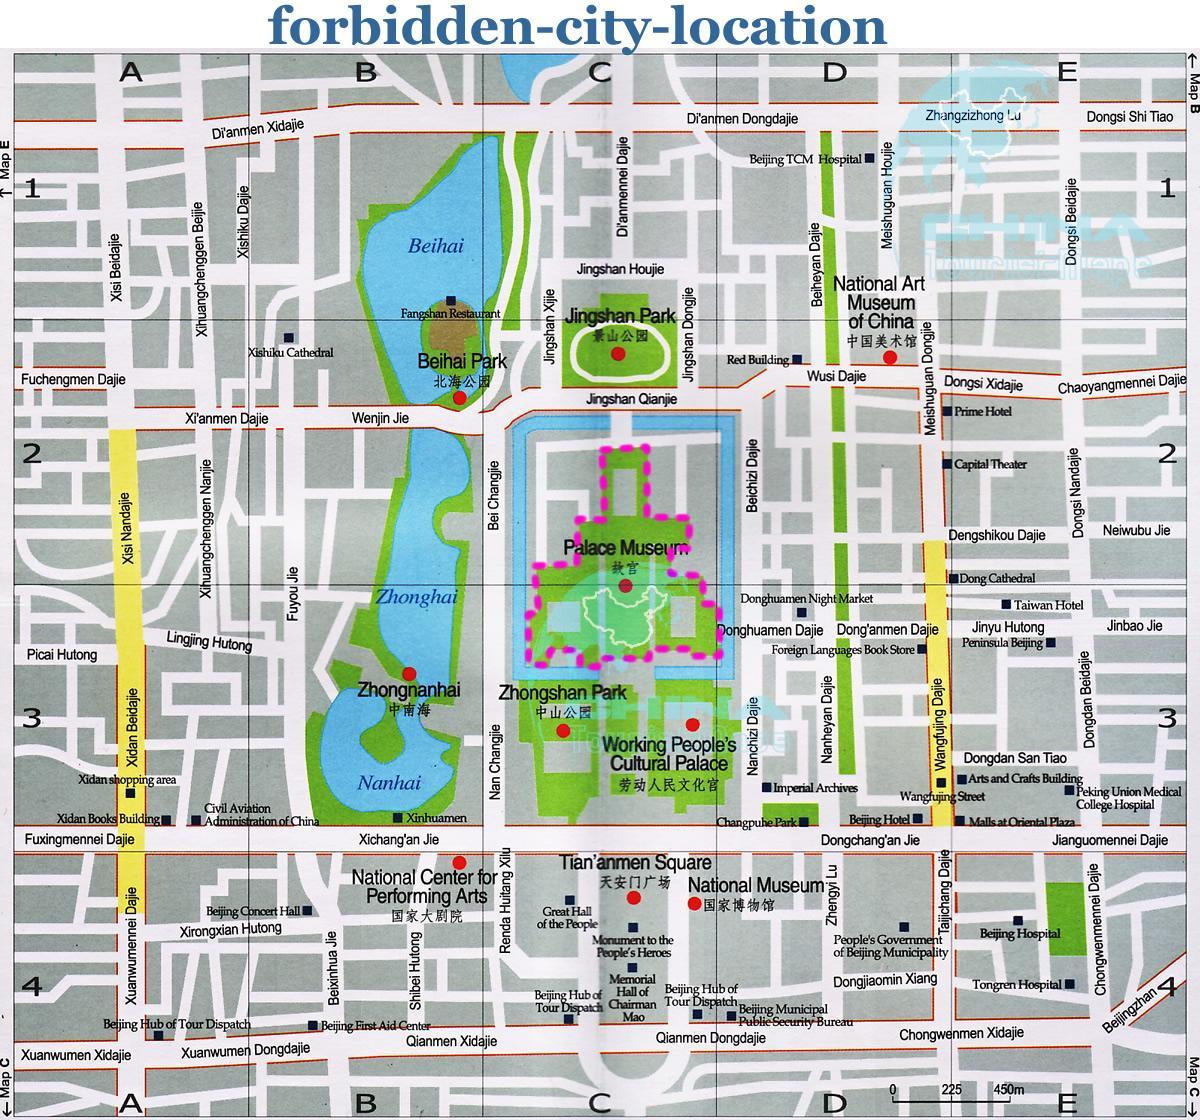 Karte der Verbotenen Stadt anzeigen detaillierte